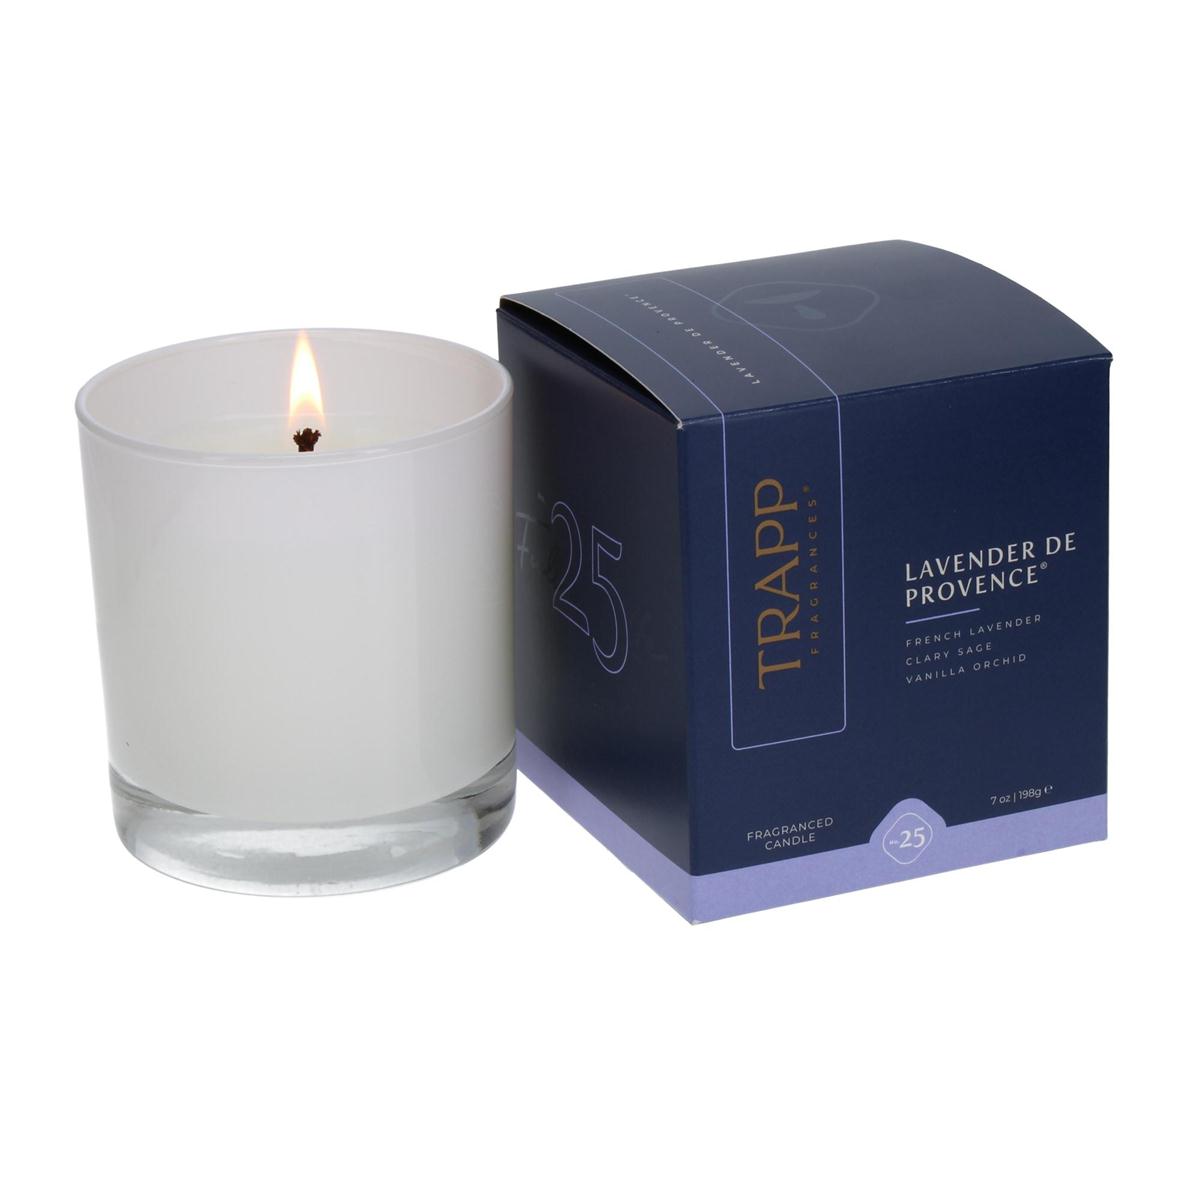 No. 25 Lavender de Provence - 7 oz. Poured Candle